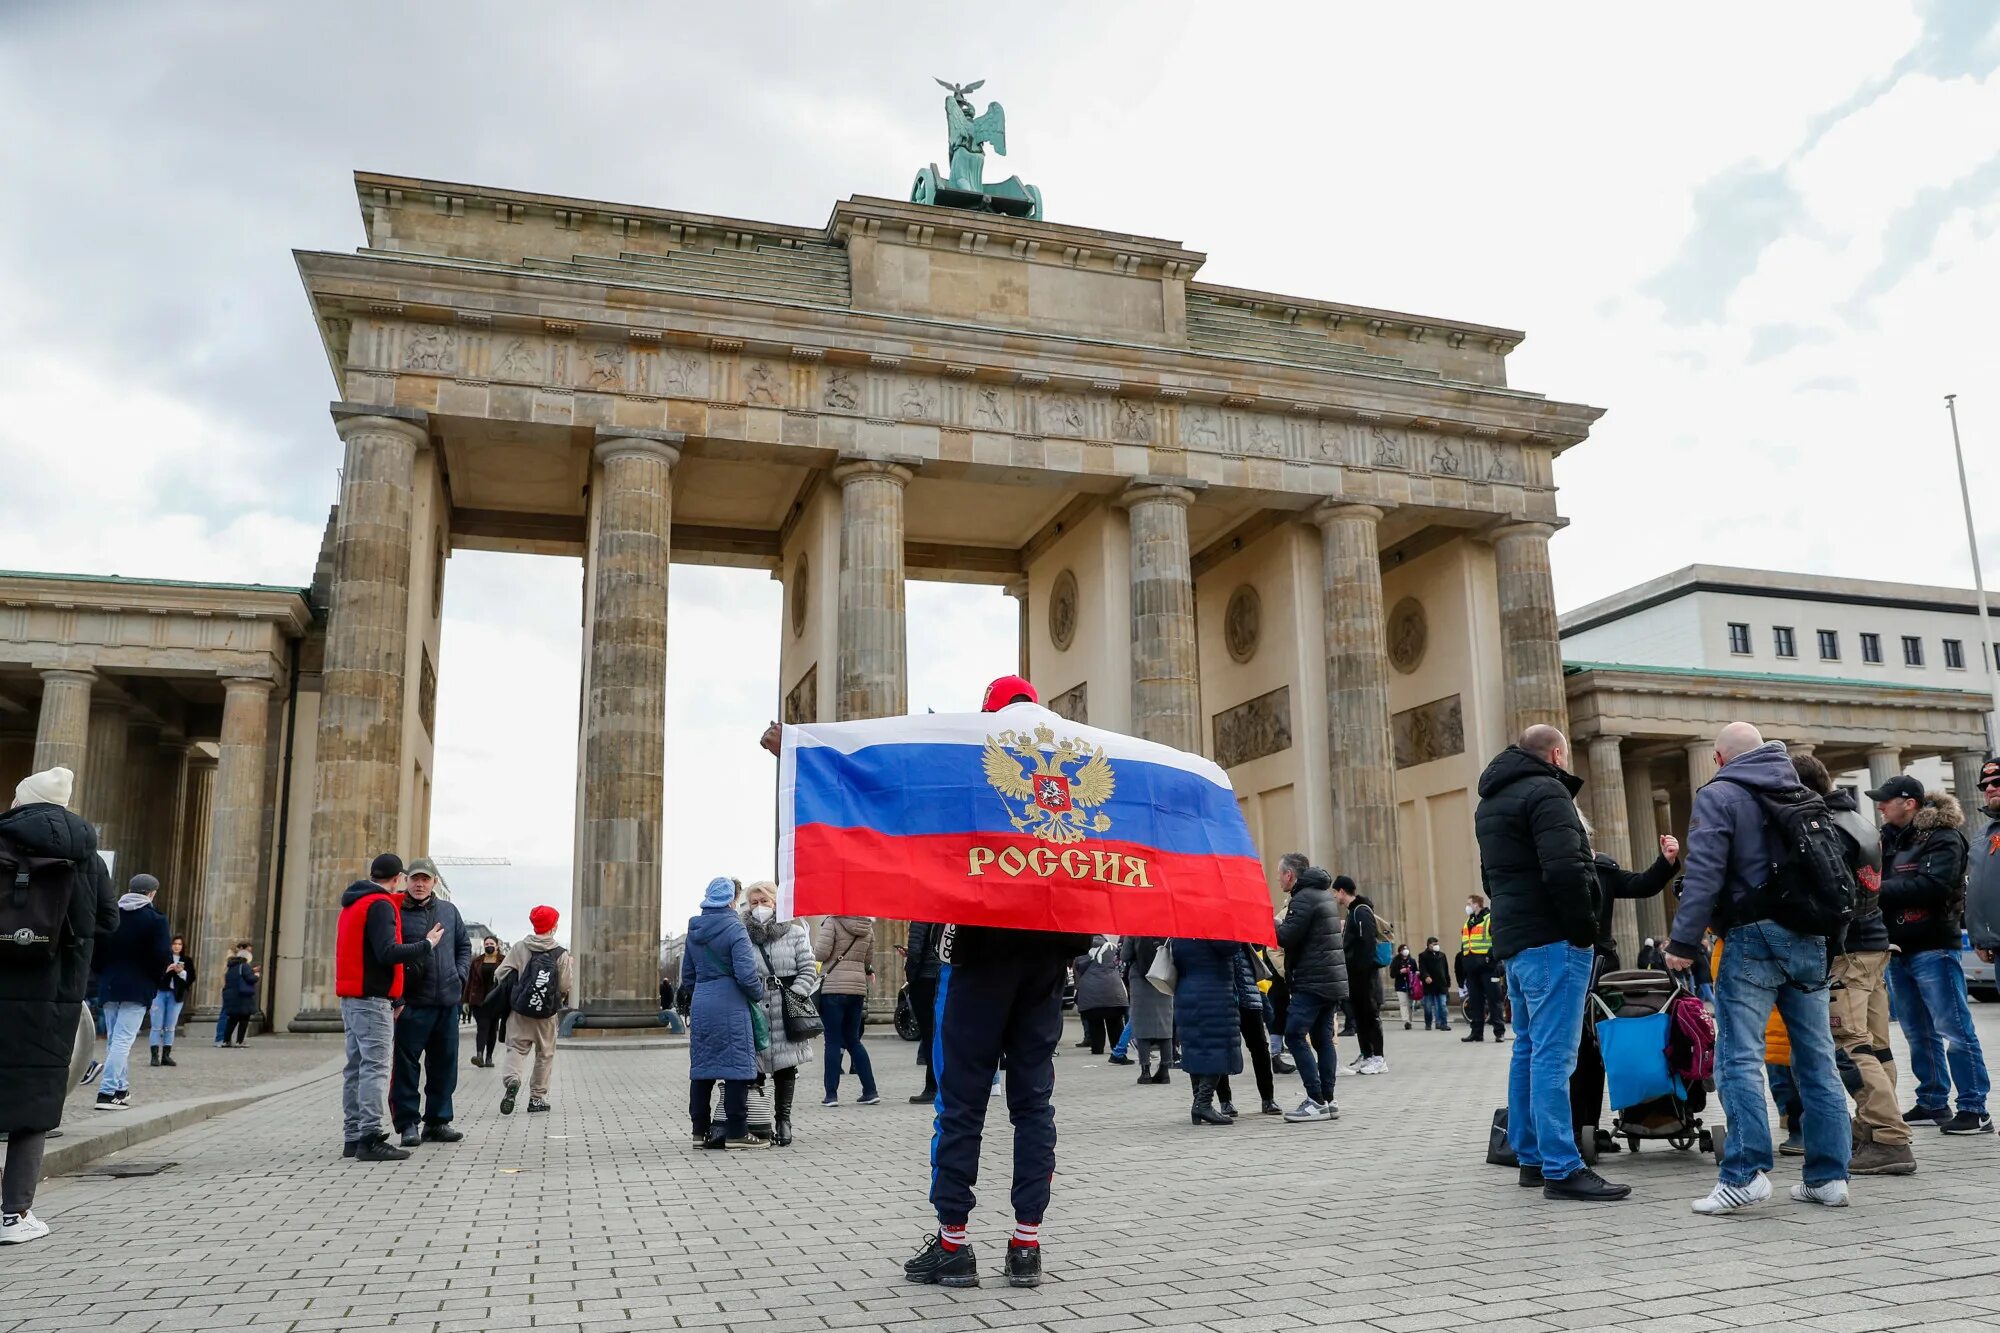 Бранденбургские ворота в Берлине российский флаг. Германия Берлин. Жители Германии. Россия и Германия.